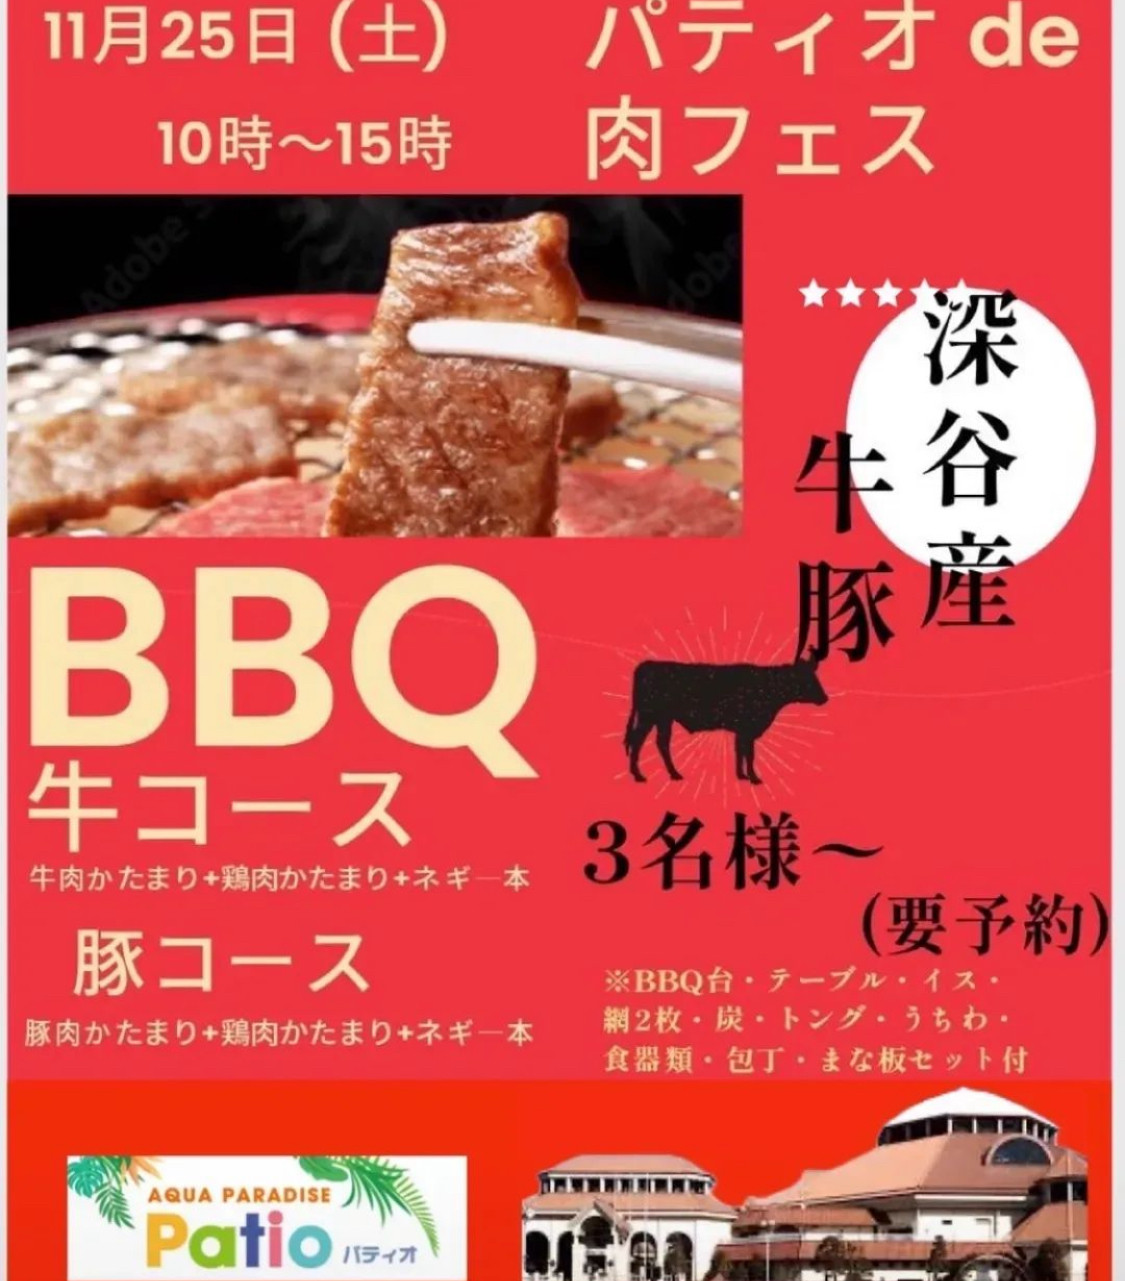 11月25日(土)肉フェス出店します。